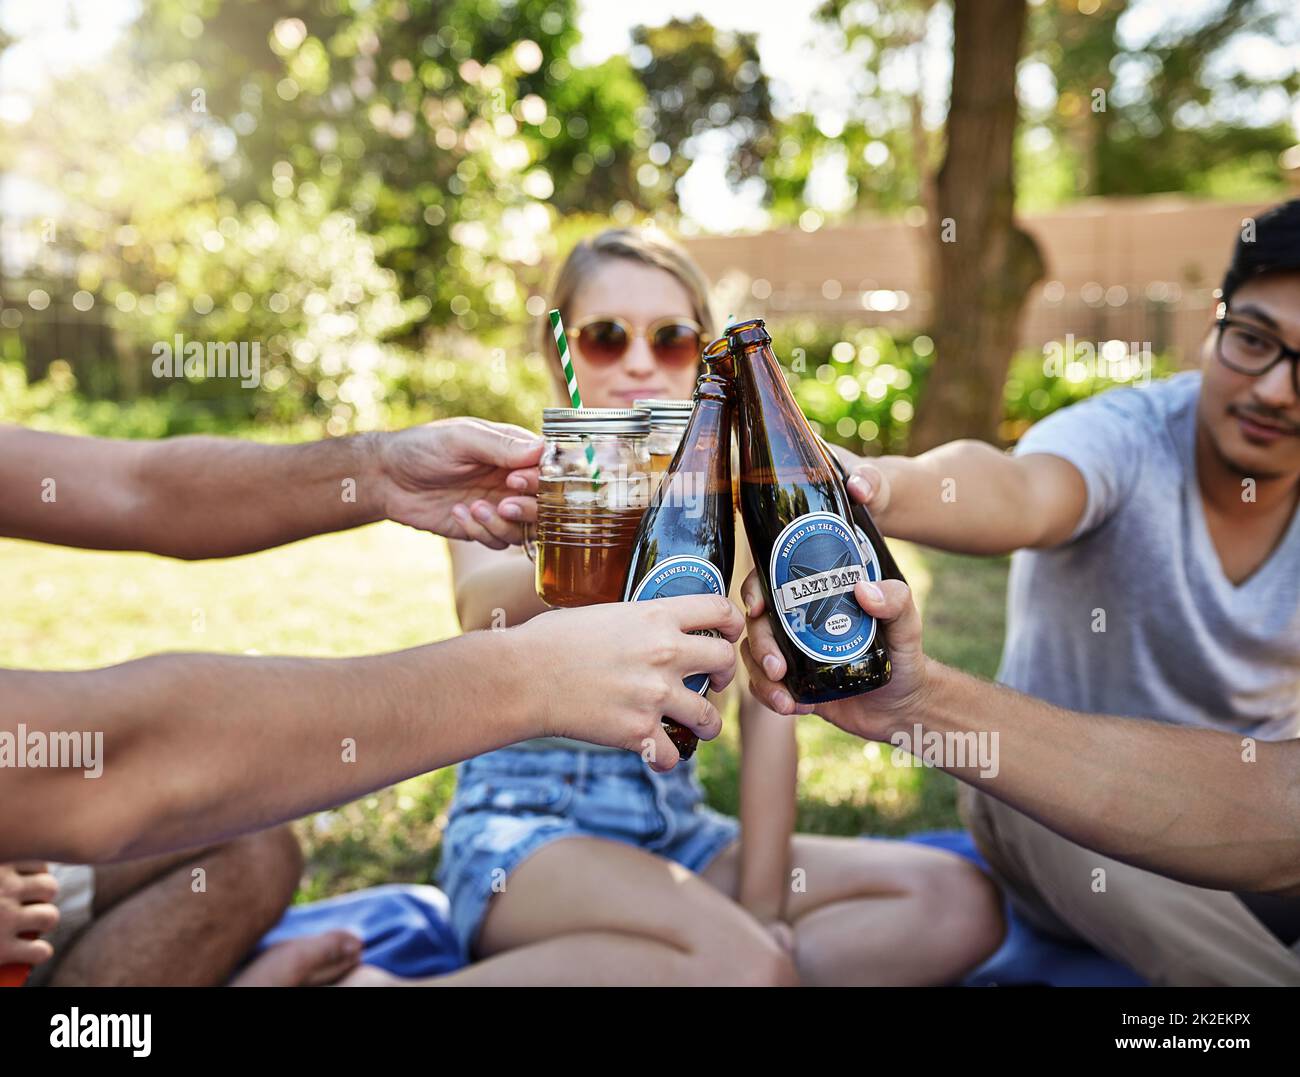 Prost zum Leben. Eine kleine Aufnahme einer jungen Gruppe von Freunden, die in der Sommersonne ein paar Drinks genießen und dabei toasten. Stockfoto